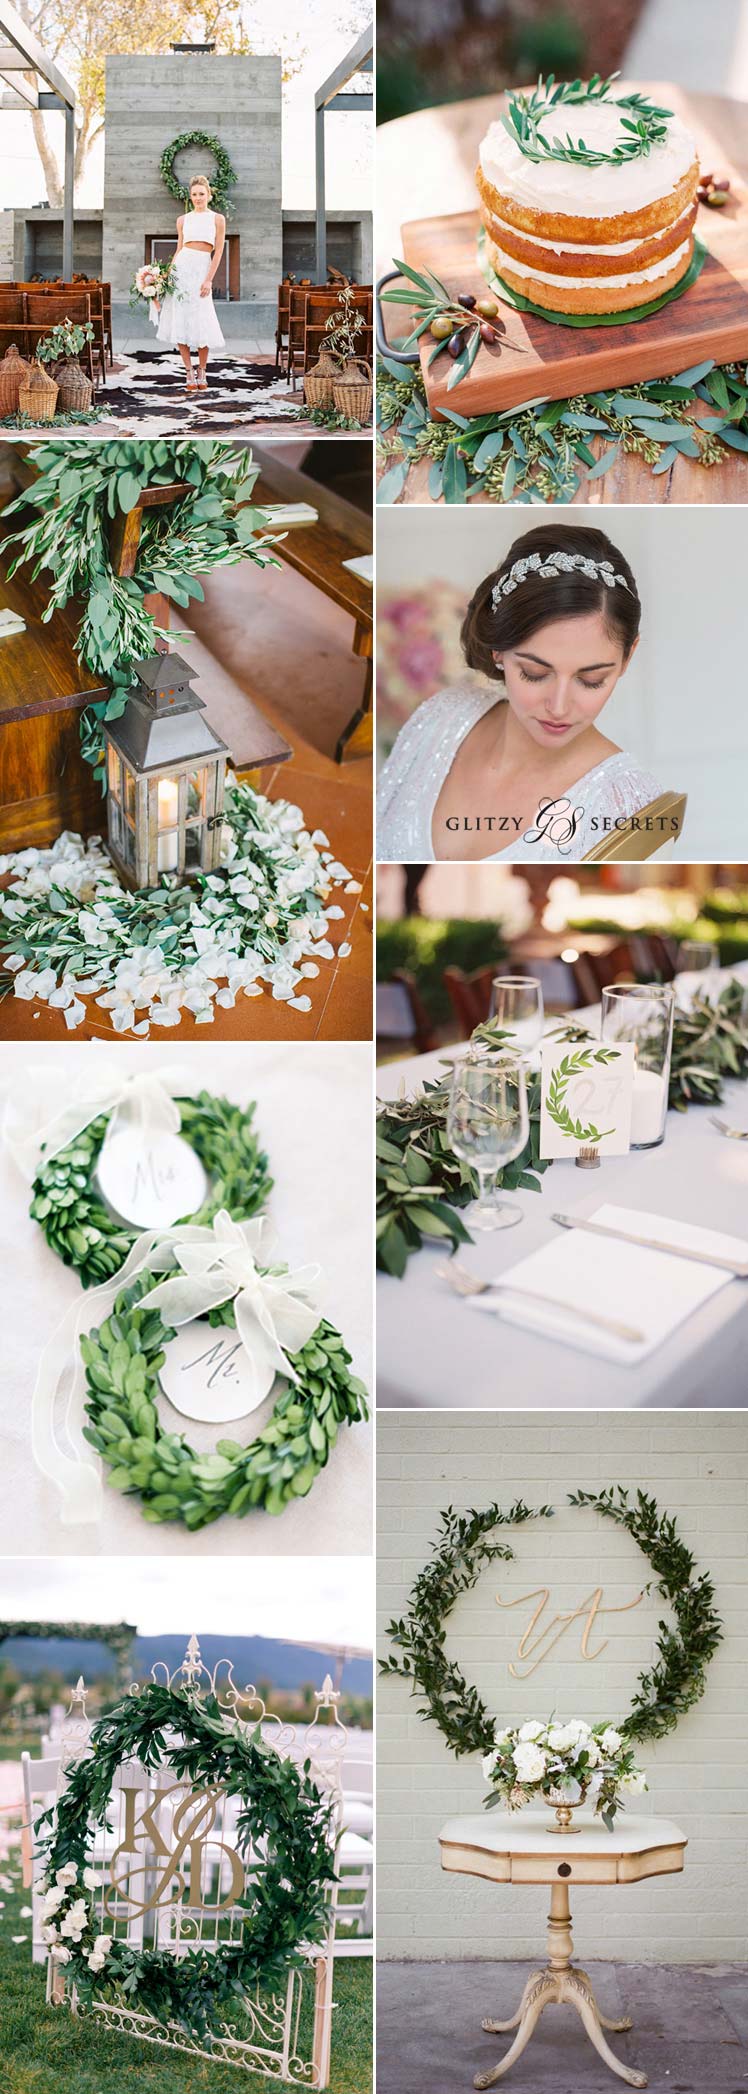 Laurel leaf theme wedding ideas